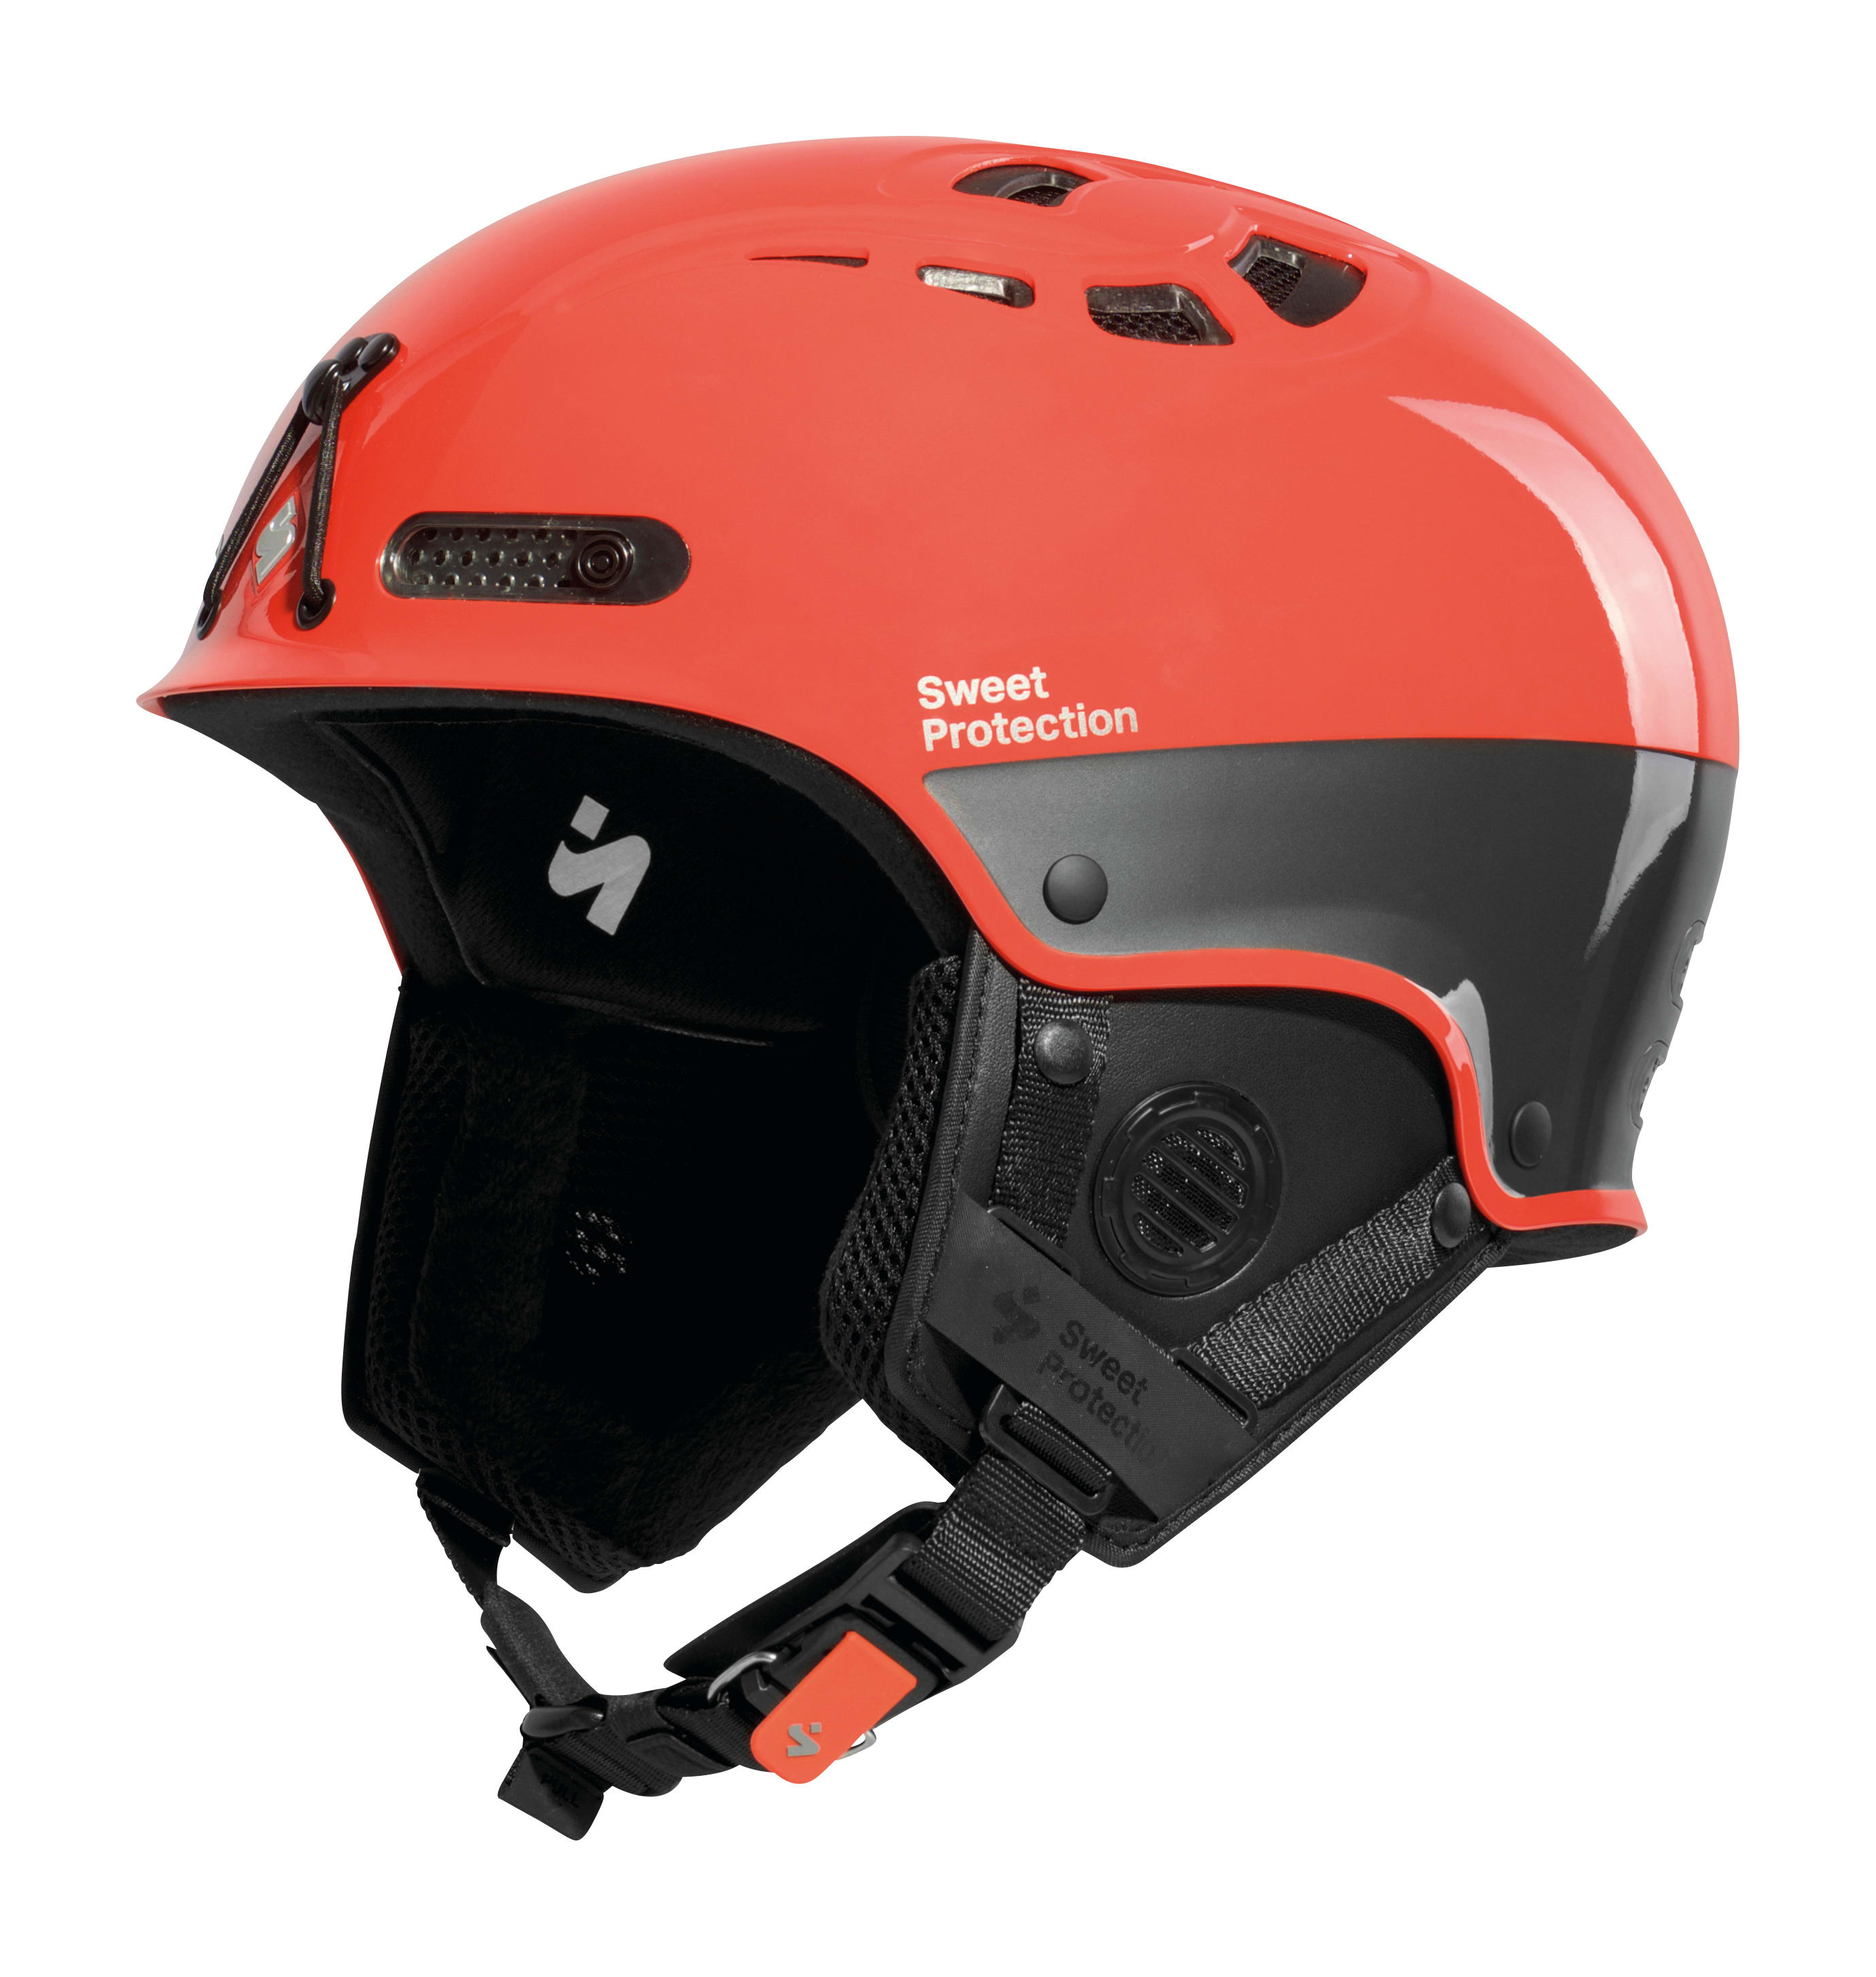 Купить горнолыжный шлем в москве. Шлем Sweet Protection Igniter II Helmet. Sweet Protection шлемы горнолыжные. HMR шлем горнолыжный. Горнолыжный шлем Termit.